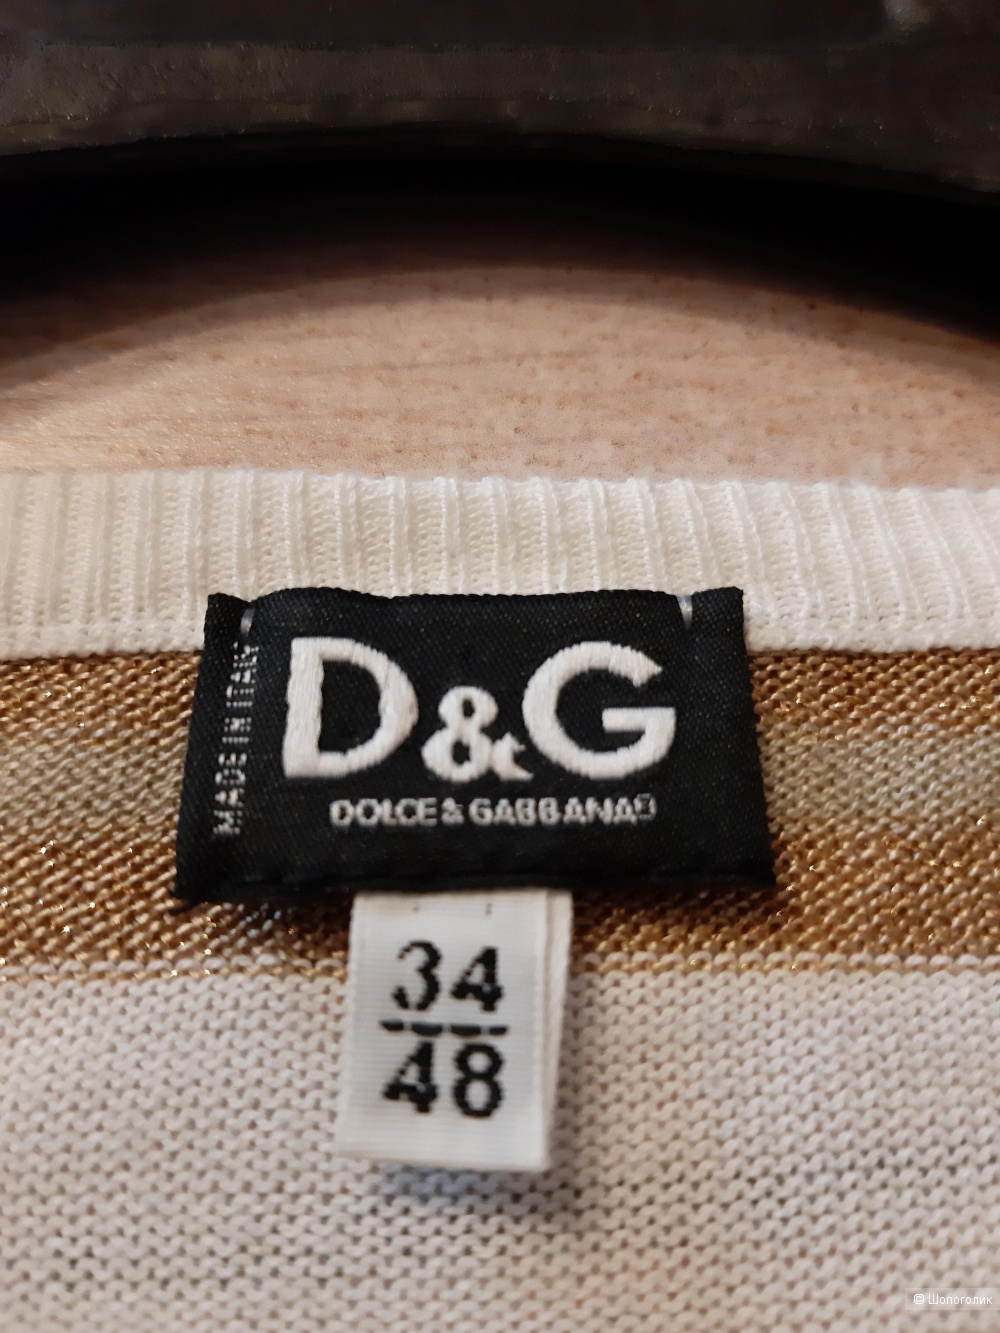 Футболка  Dolce & Gabbana , размер  европейский  34